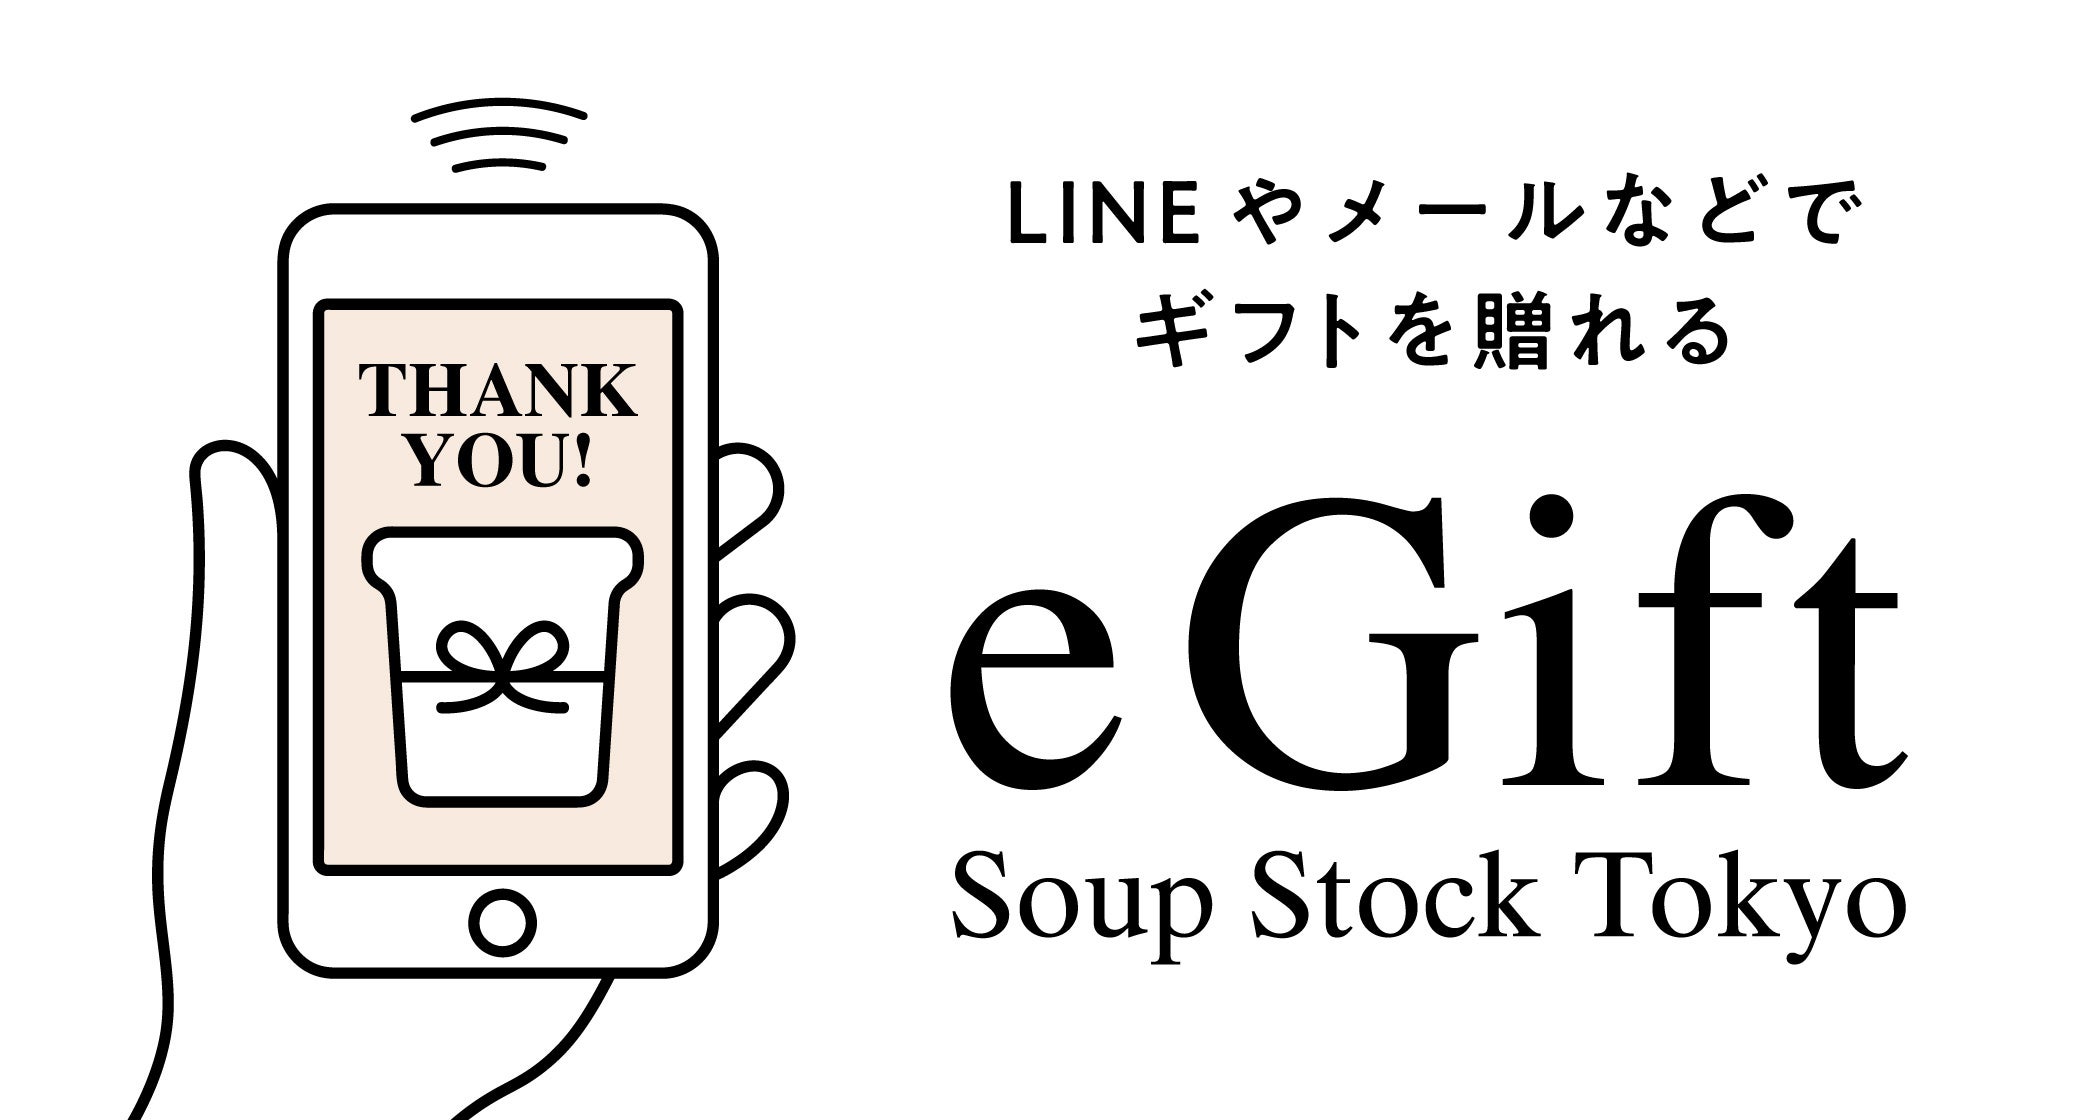 Soup Stock Tokyo公式オンラインショップにて、お届け先の住所を知らなくてもLINEやメールでギフトを贈れるeギフトサービスを開始いたします。